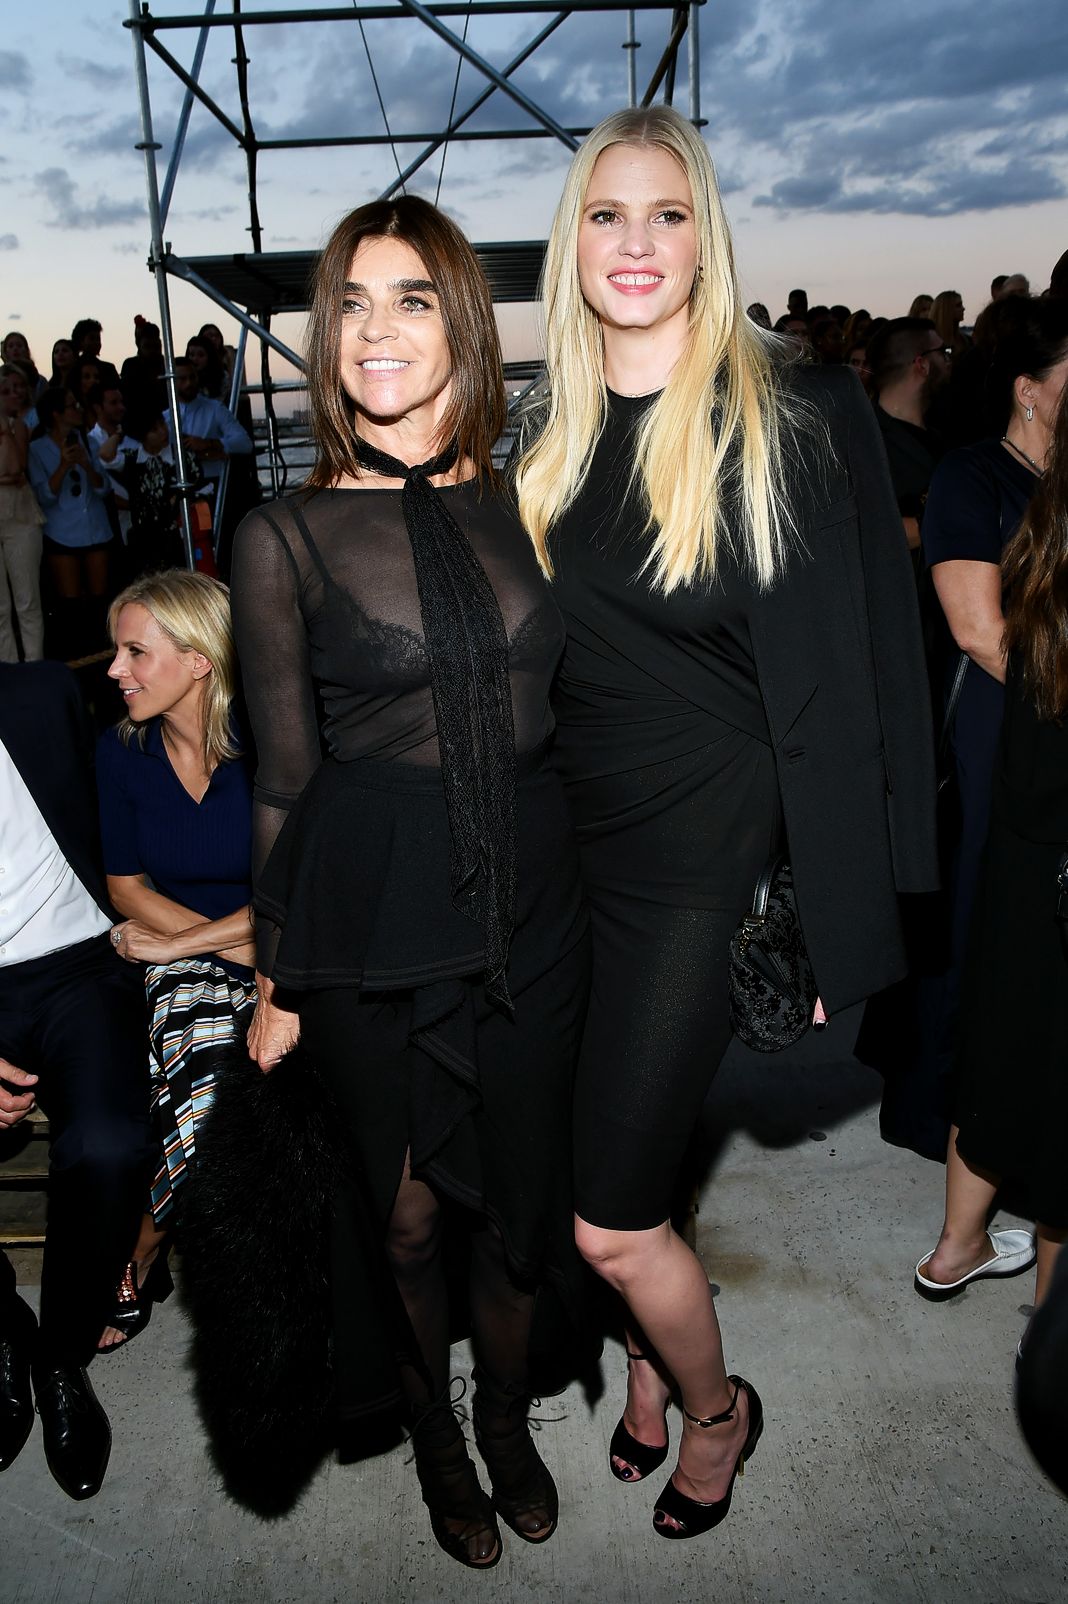 Бывший главный редактор Vogue Paris Карин Ройтфельд и модель Лара Стоун на показе мод Givenchy во время Недели моды в Нью-Йорке.